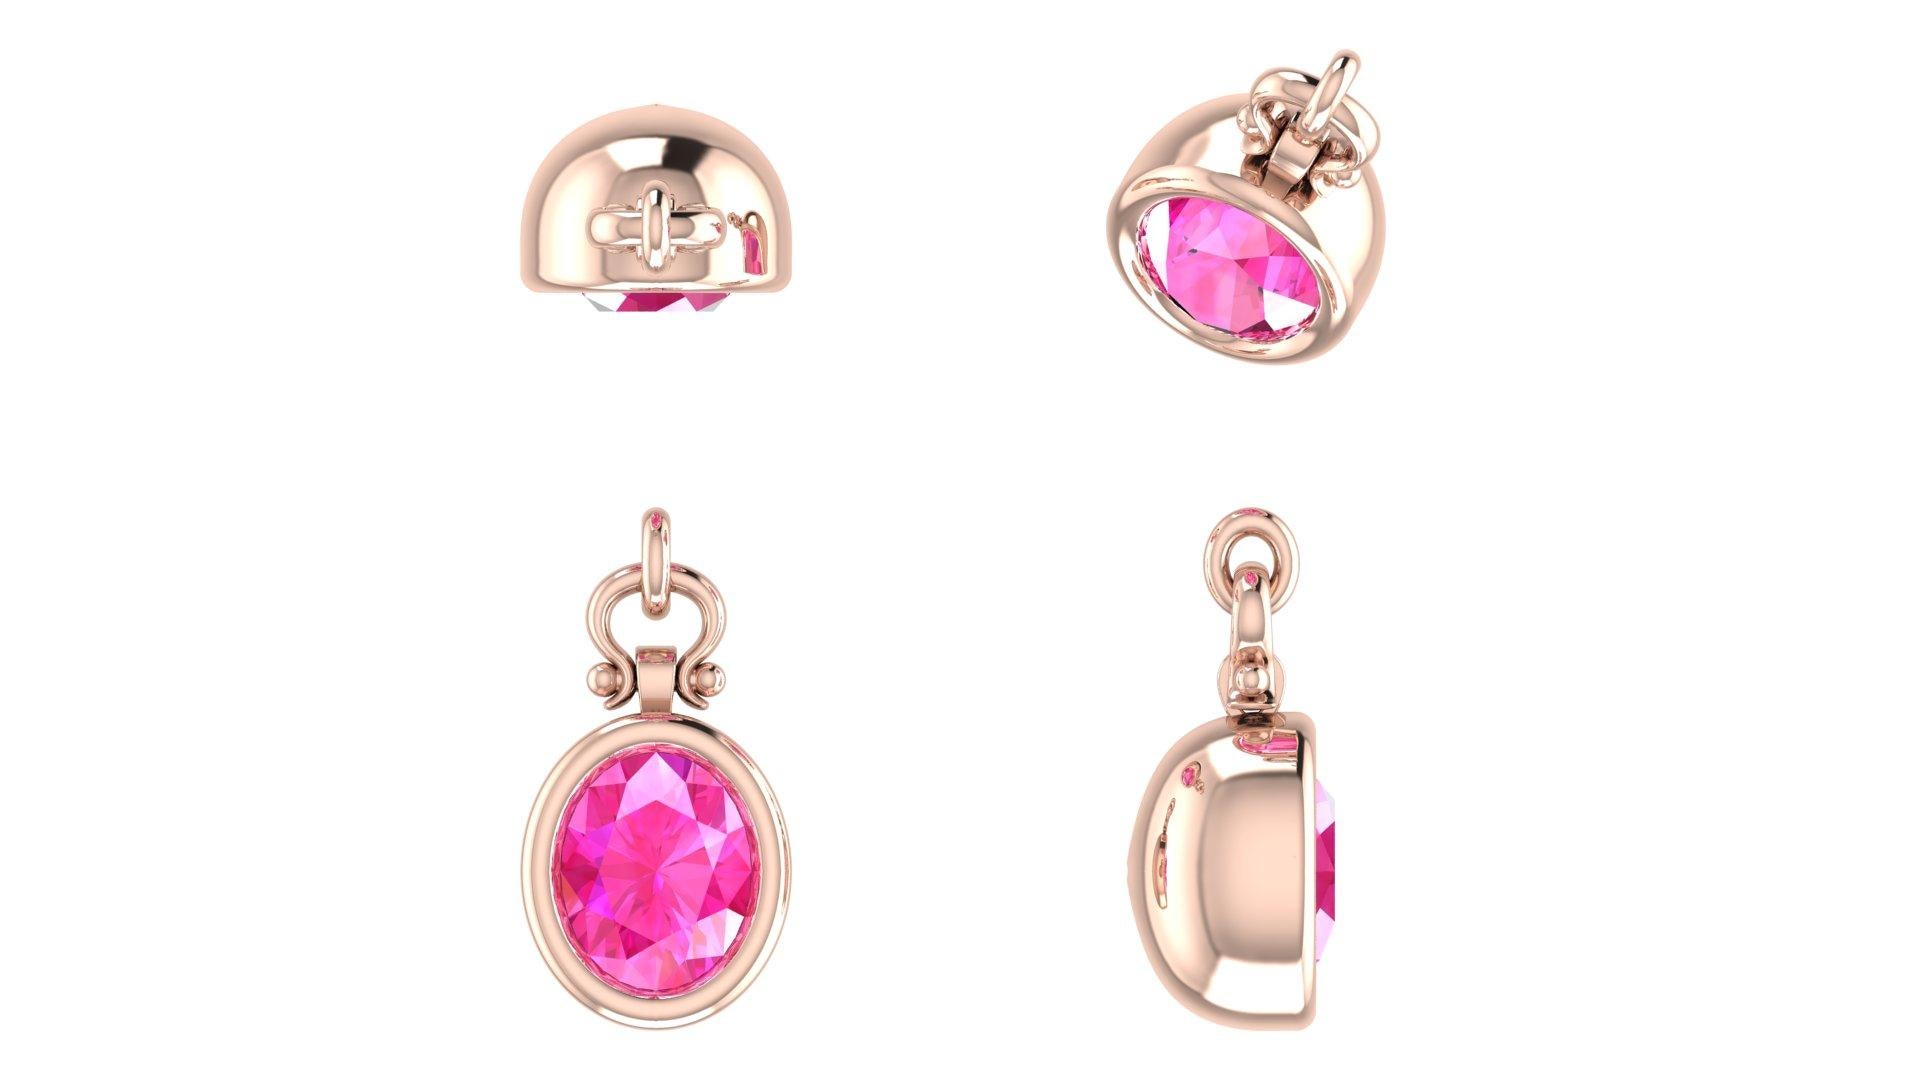 Berberyn Certified 3.12 Carat Oval Cut Pink Sapphire Pendant Necklace in 18K For Sale 1